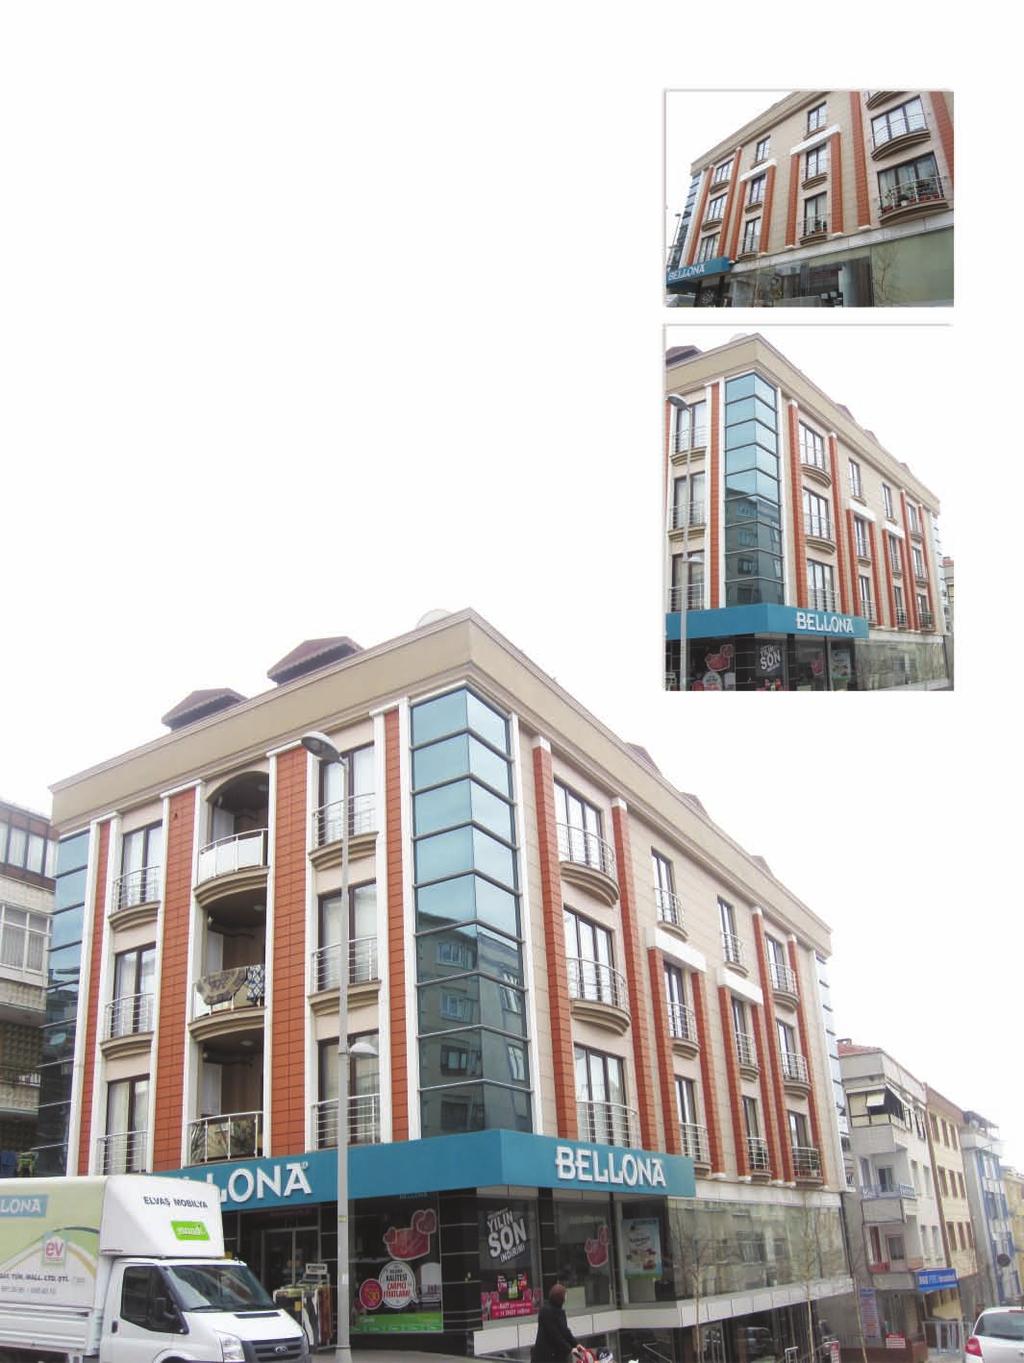 Yusuf Apartmanı / Yusuf Apartment Building Proje Açıklaması: Yusuf Apartmanı 155 m 2 lik 4 normal ve 320 m 2 lik 2 dublex toplam 6 daire ve 750 m 2 lik mağazadan oluşmaktadır.